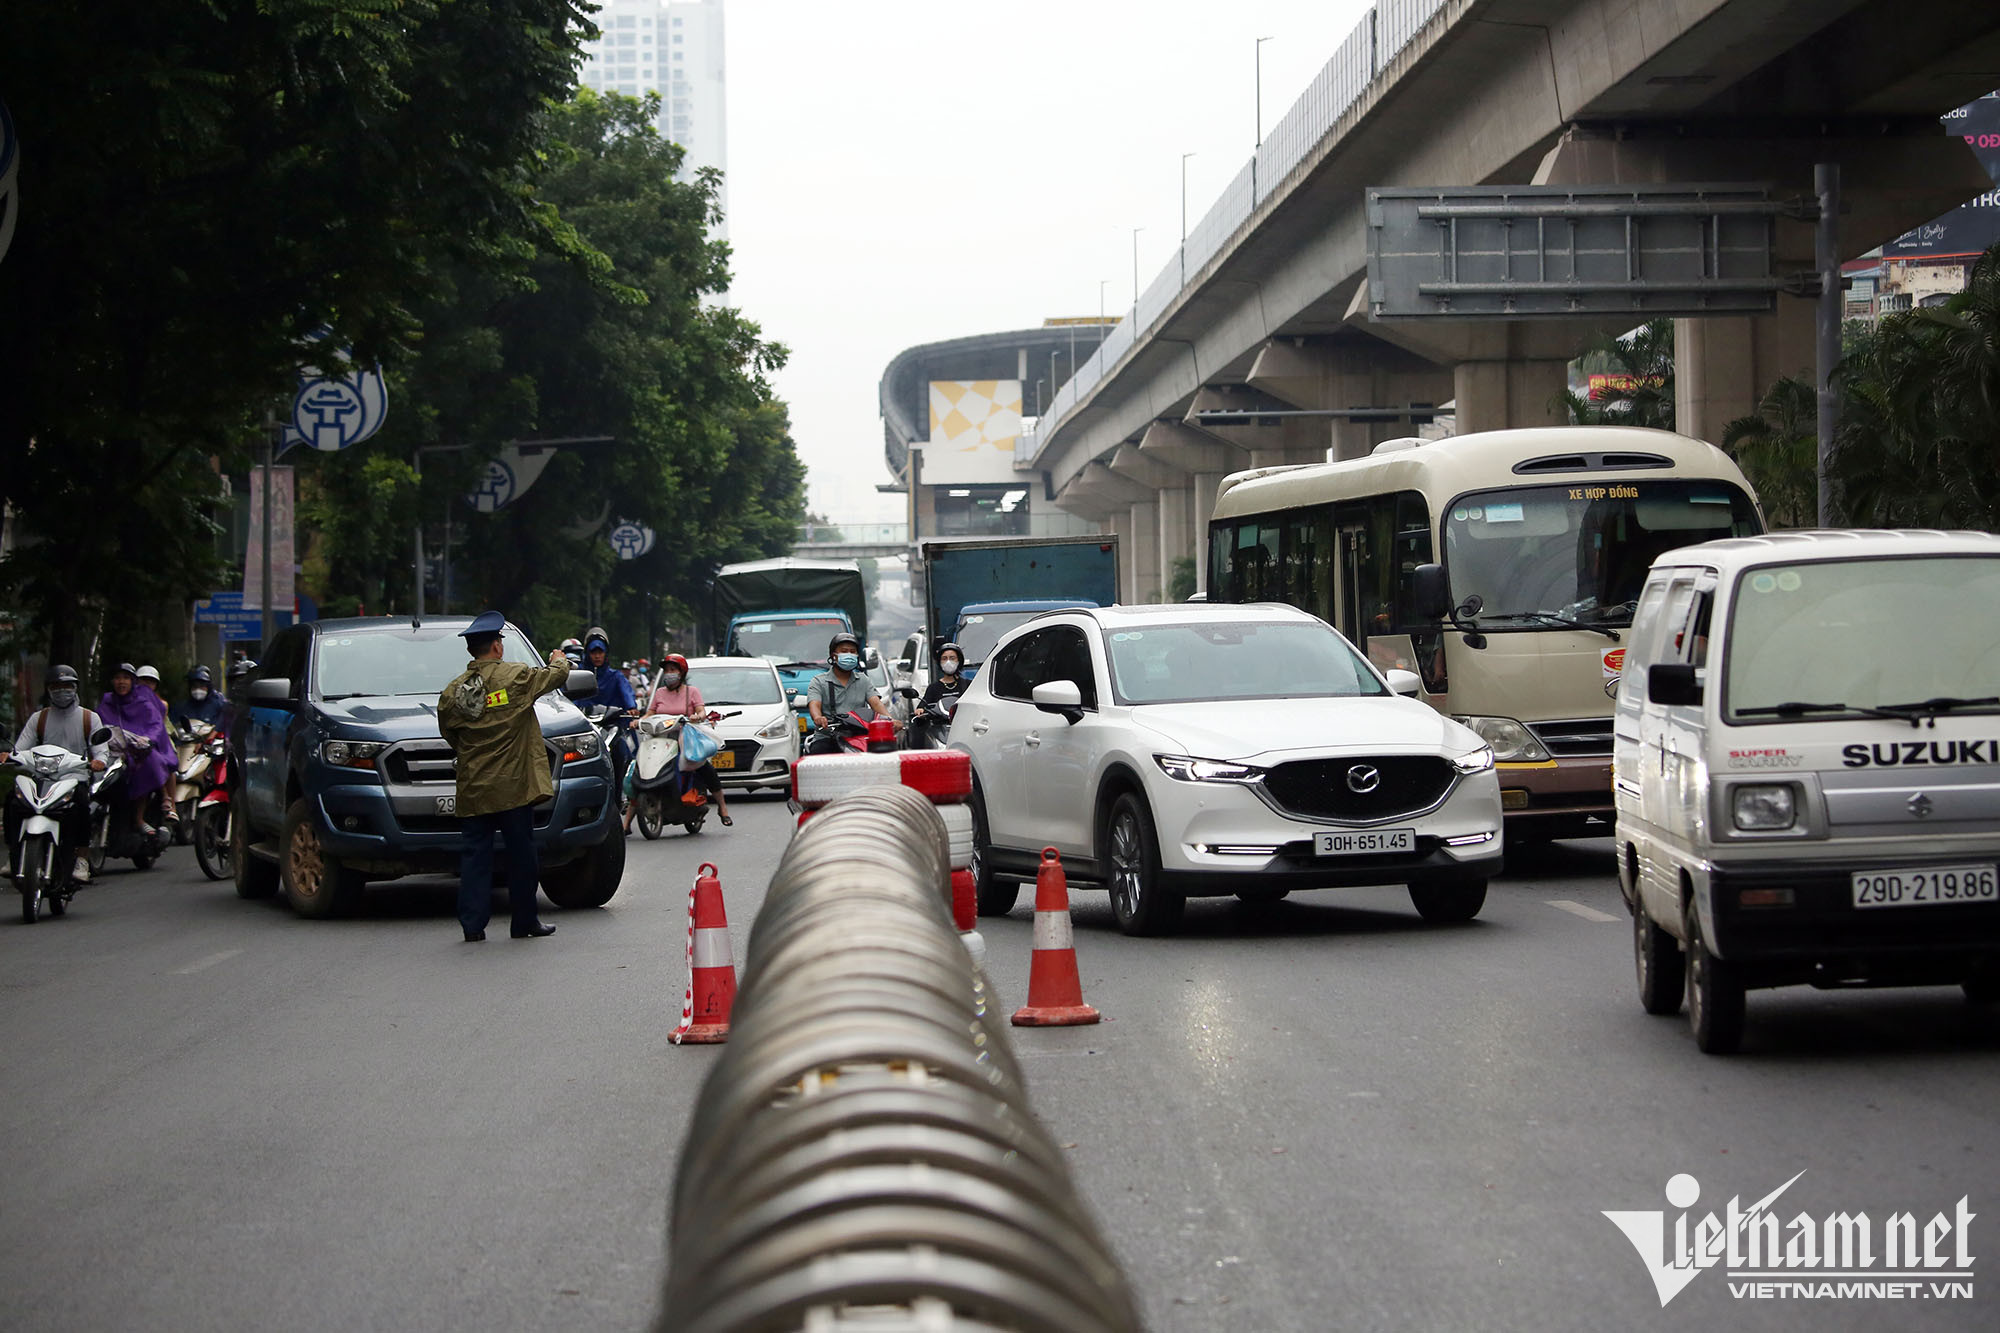 Phân làn ở đường Nguyễn Trãi, làm sao để tài xế không bị phạt oan?